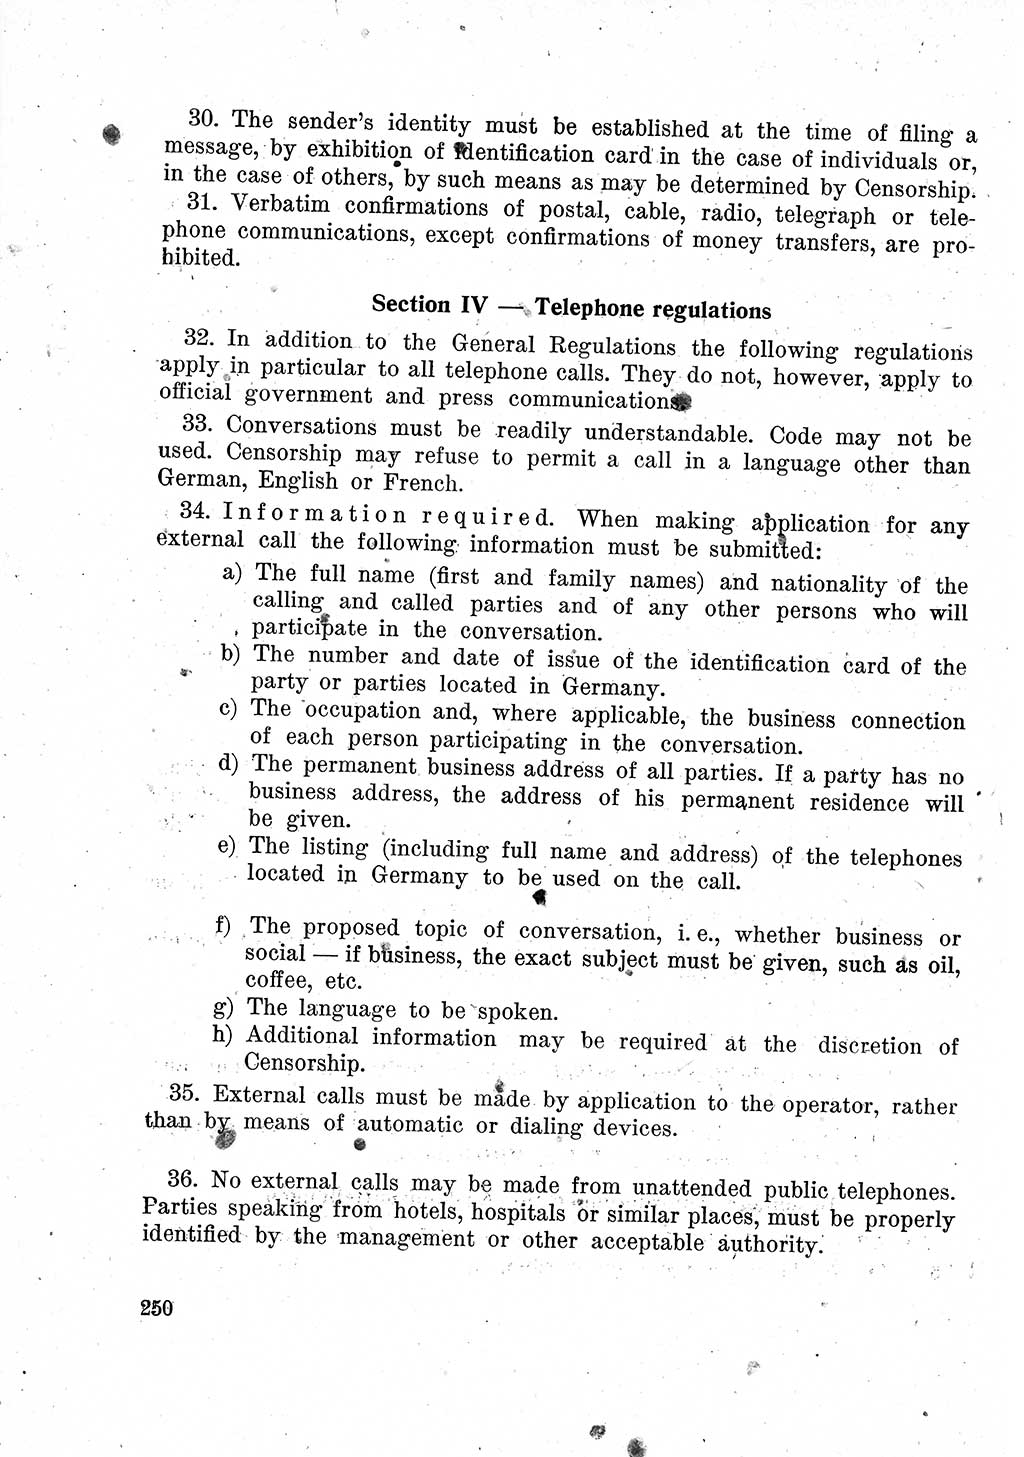 Das Recht der Besatzungsmacht (Deutschland), Proklamationen, Deklerationen, Verordnungen, Gesetze und Bekanntmachungen 1947, Seite 250 (R. Bes. Dtl. 1947, S. 250)